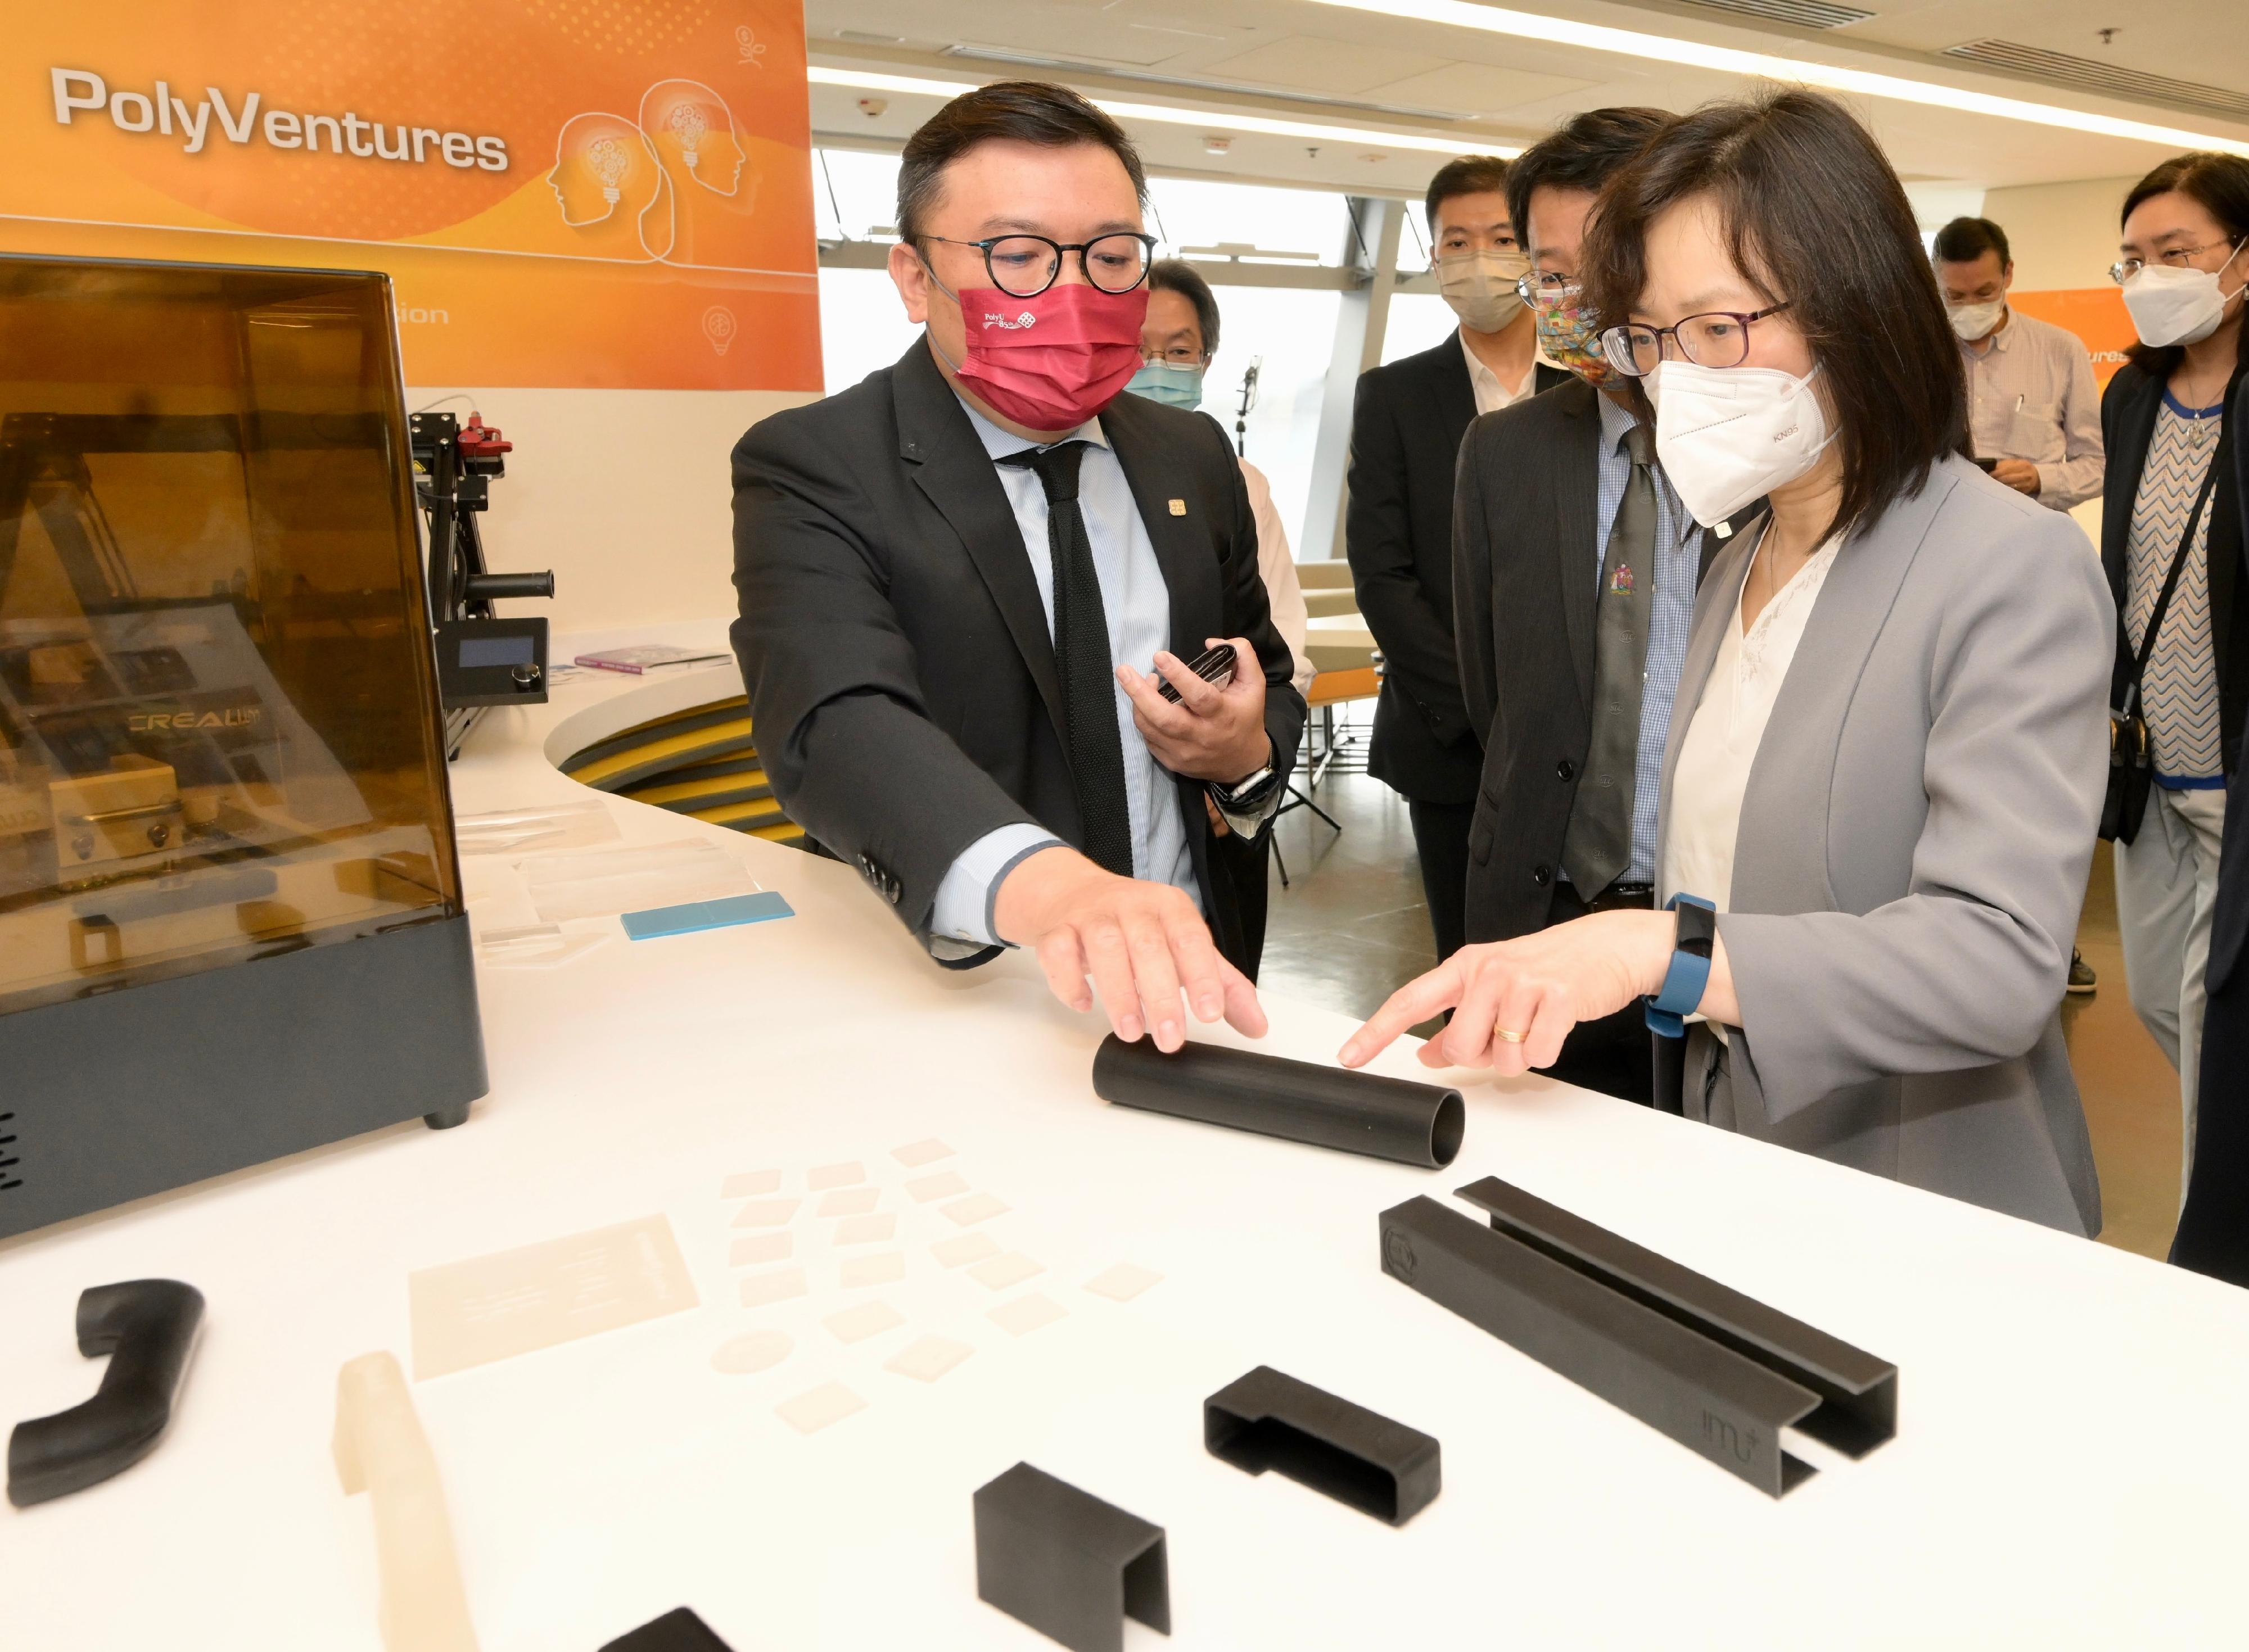 創新科技署署長潘婷婷四月二十七日到訪香港理工大學與研究團隊會面及交流。圖示潘婷婷（右一）聽取有關可殺滅新冠病毒的三維打印物料的簡介。